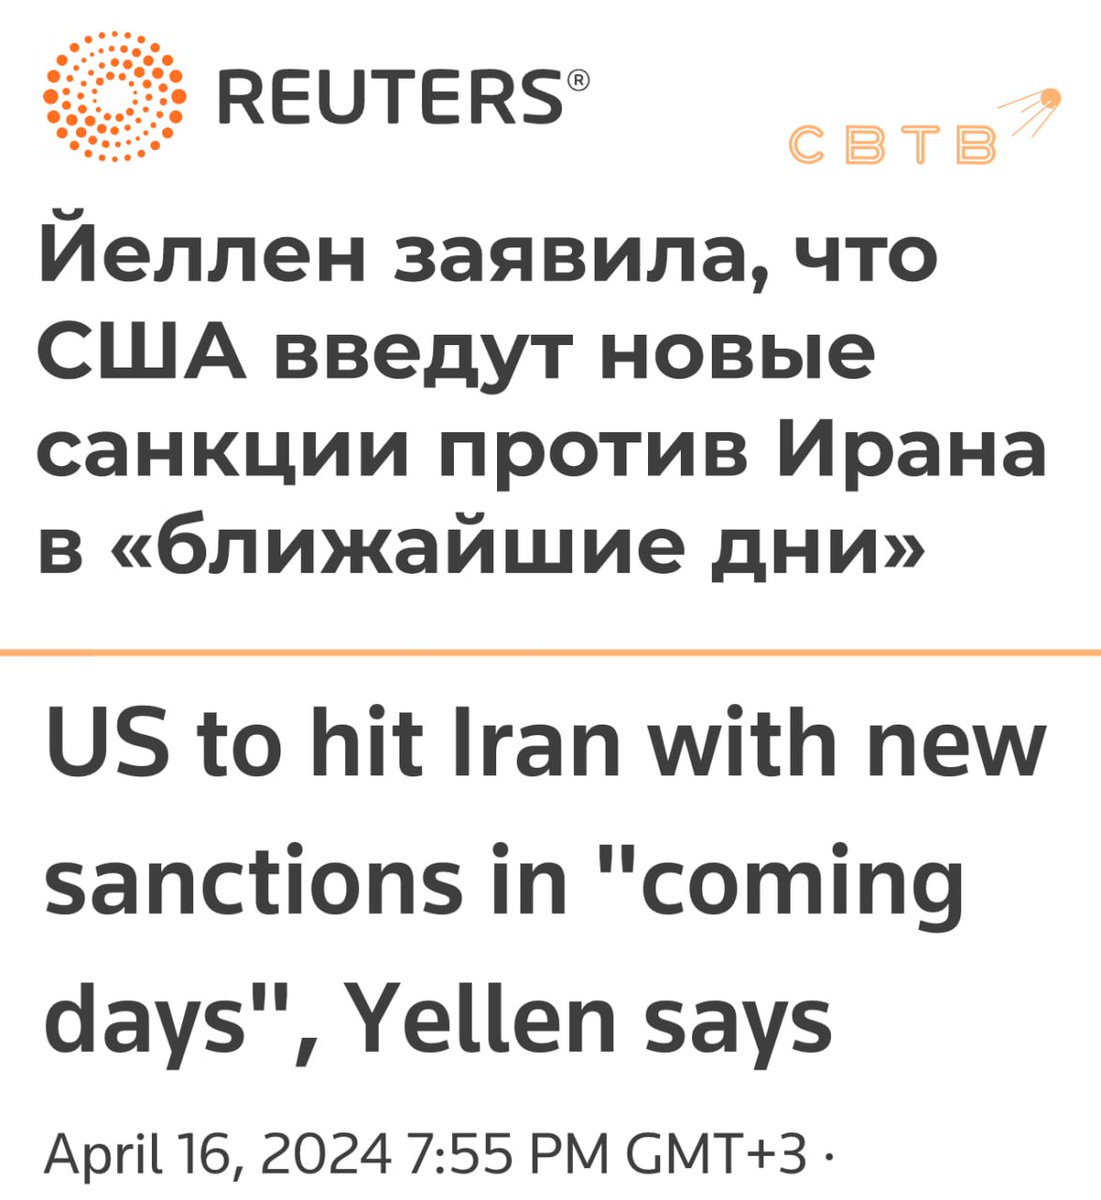 США введут новые санкции против Ирана — Reuters Информационное агентство утверждает, что министр финансов США Джанет Йеллен в частных беседах анонсировала новые санкции в отношении Ирана за нападение на Израиль: «Я полностью ожидаю, что мы предпримем дополнительные санкционные…